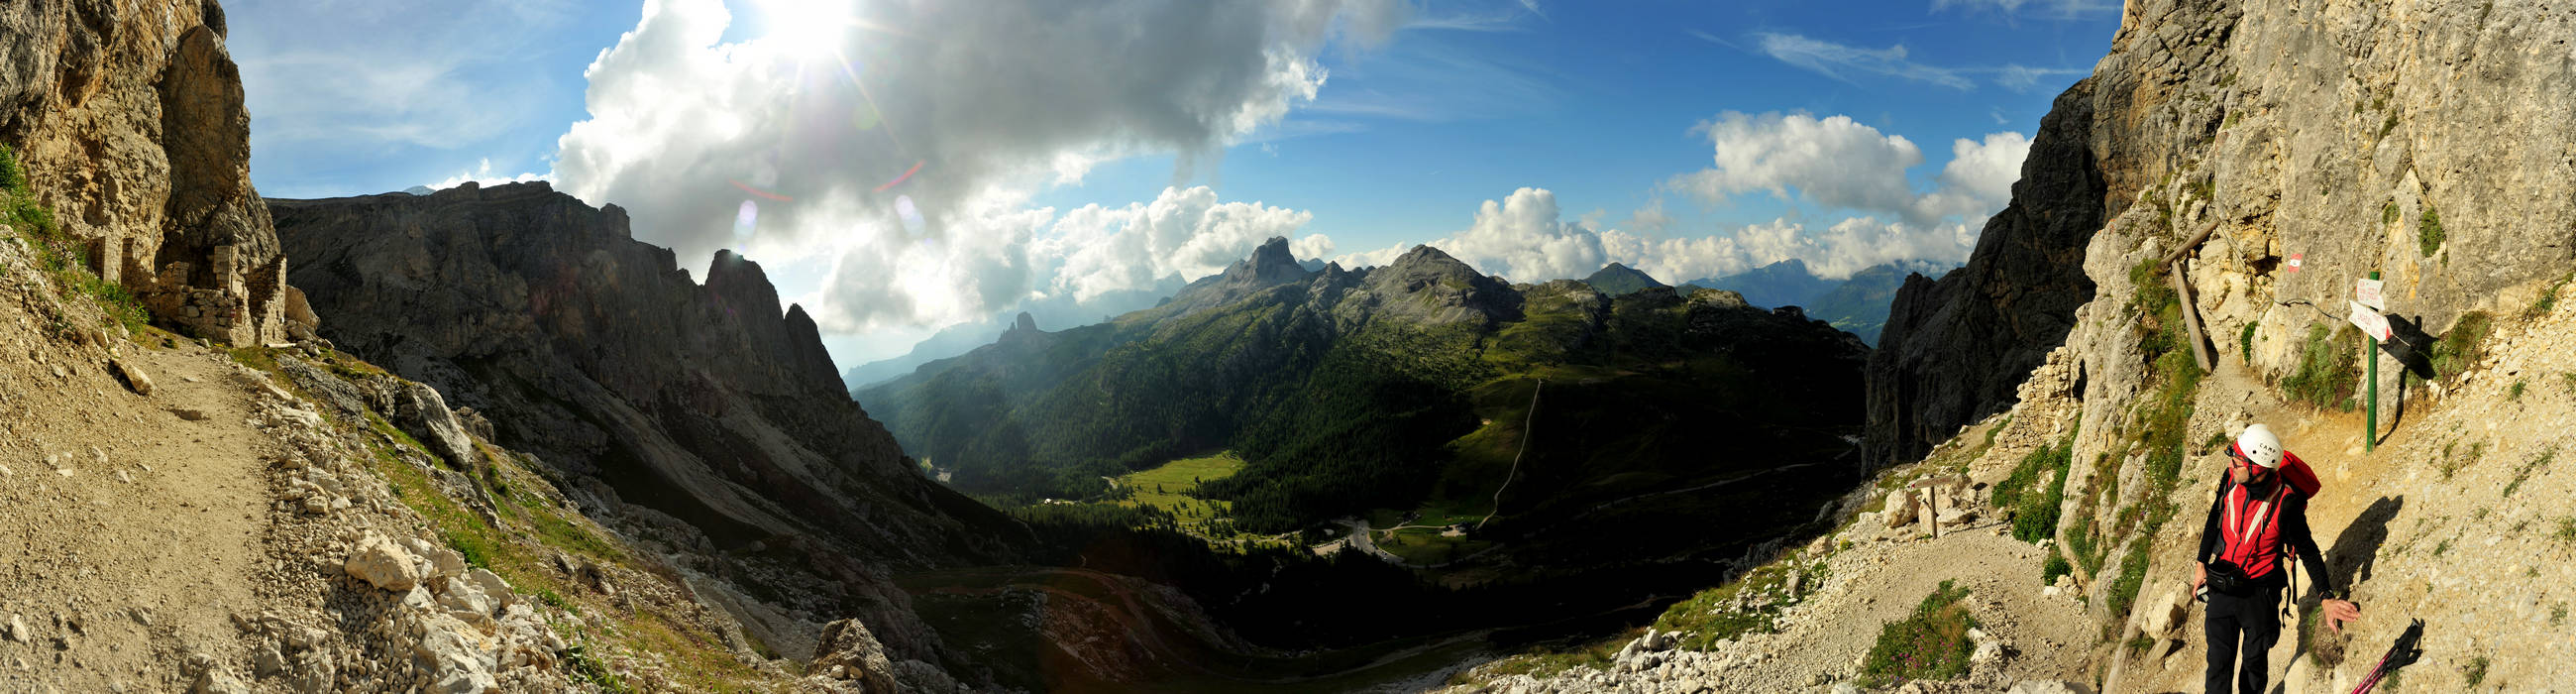 Dolomiti Falzarego Lagazuoi, Cortina d'Ampezzo